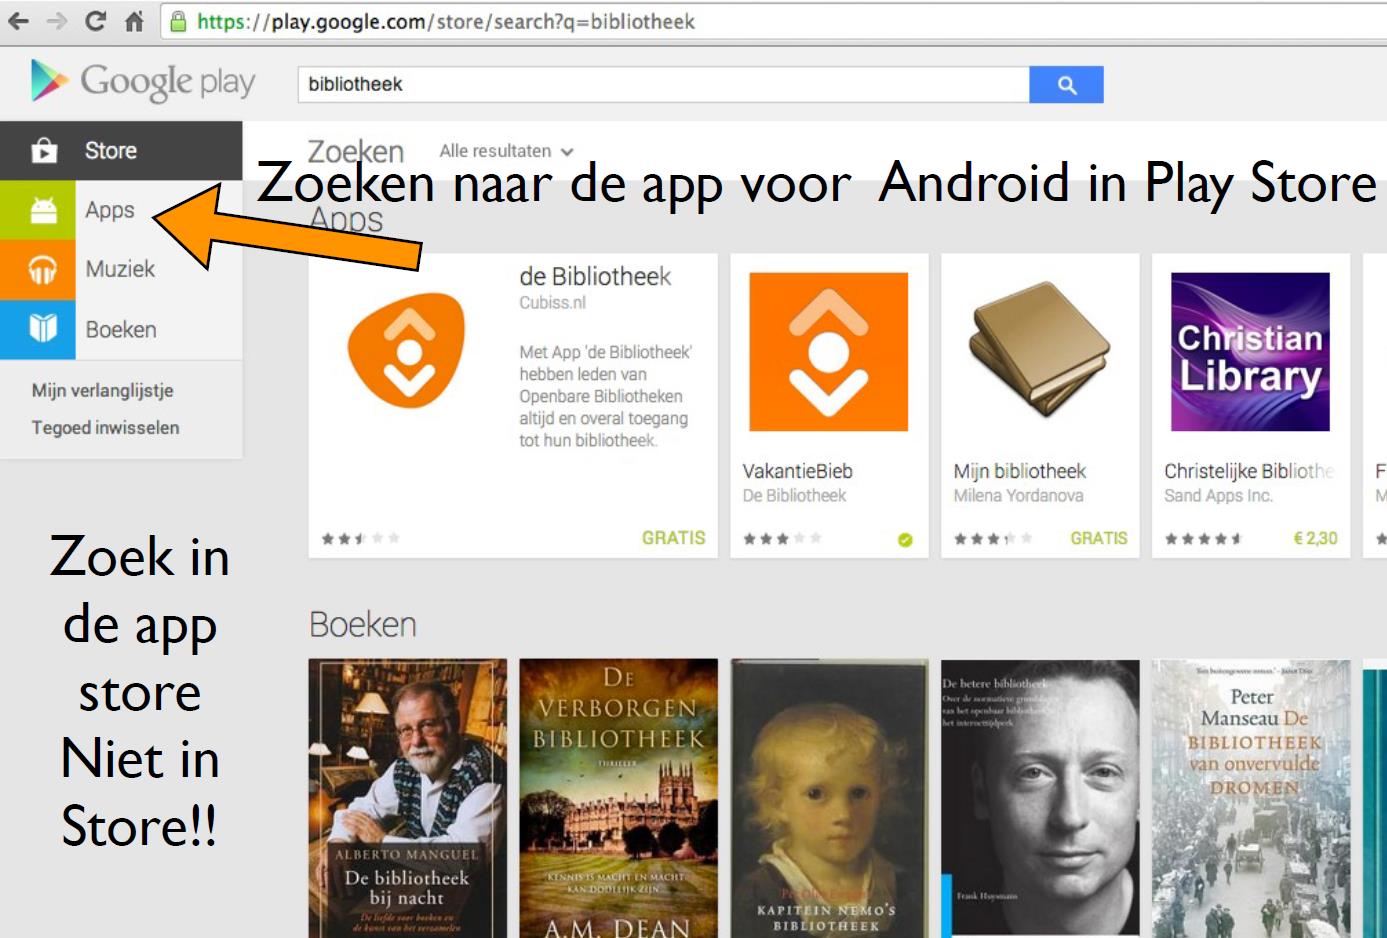 Stap 1 U dient zich eerst te registreren of in te loggen op www.bibliotheek.nl. Stap 2 Nu u ingelogd bent kunt u e-books uitzoeken en op uw boekenplank plaatsen.